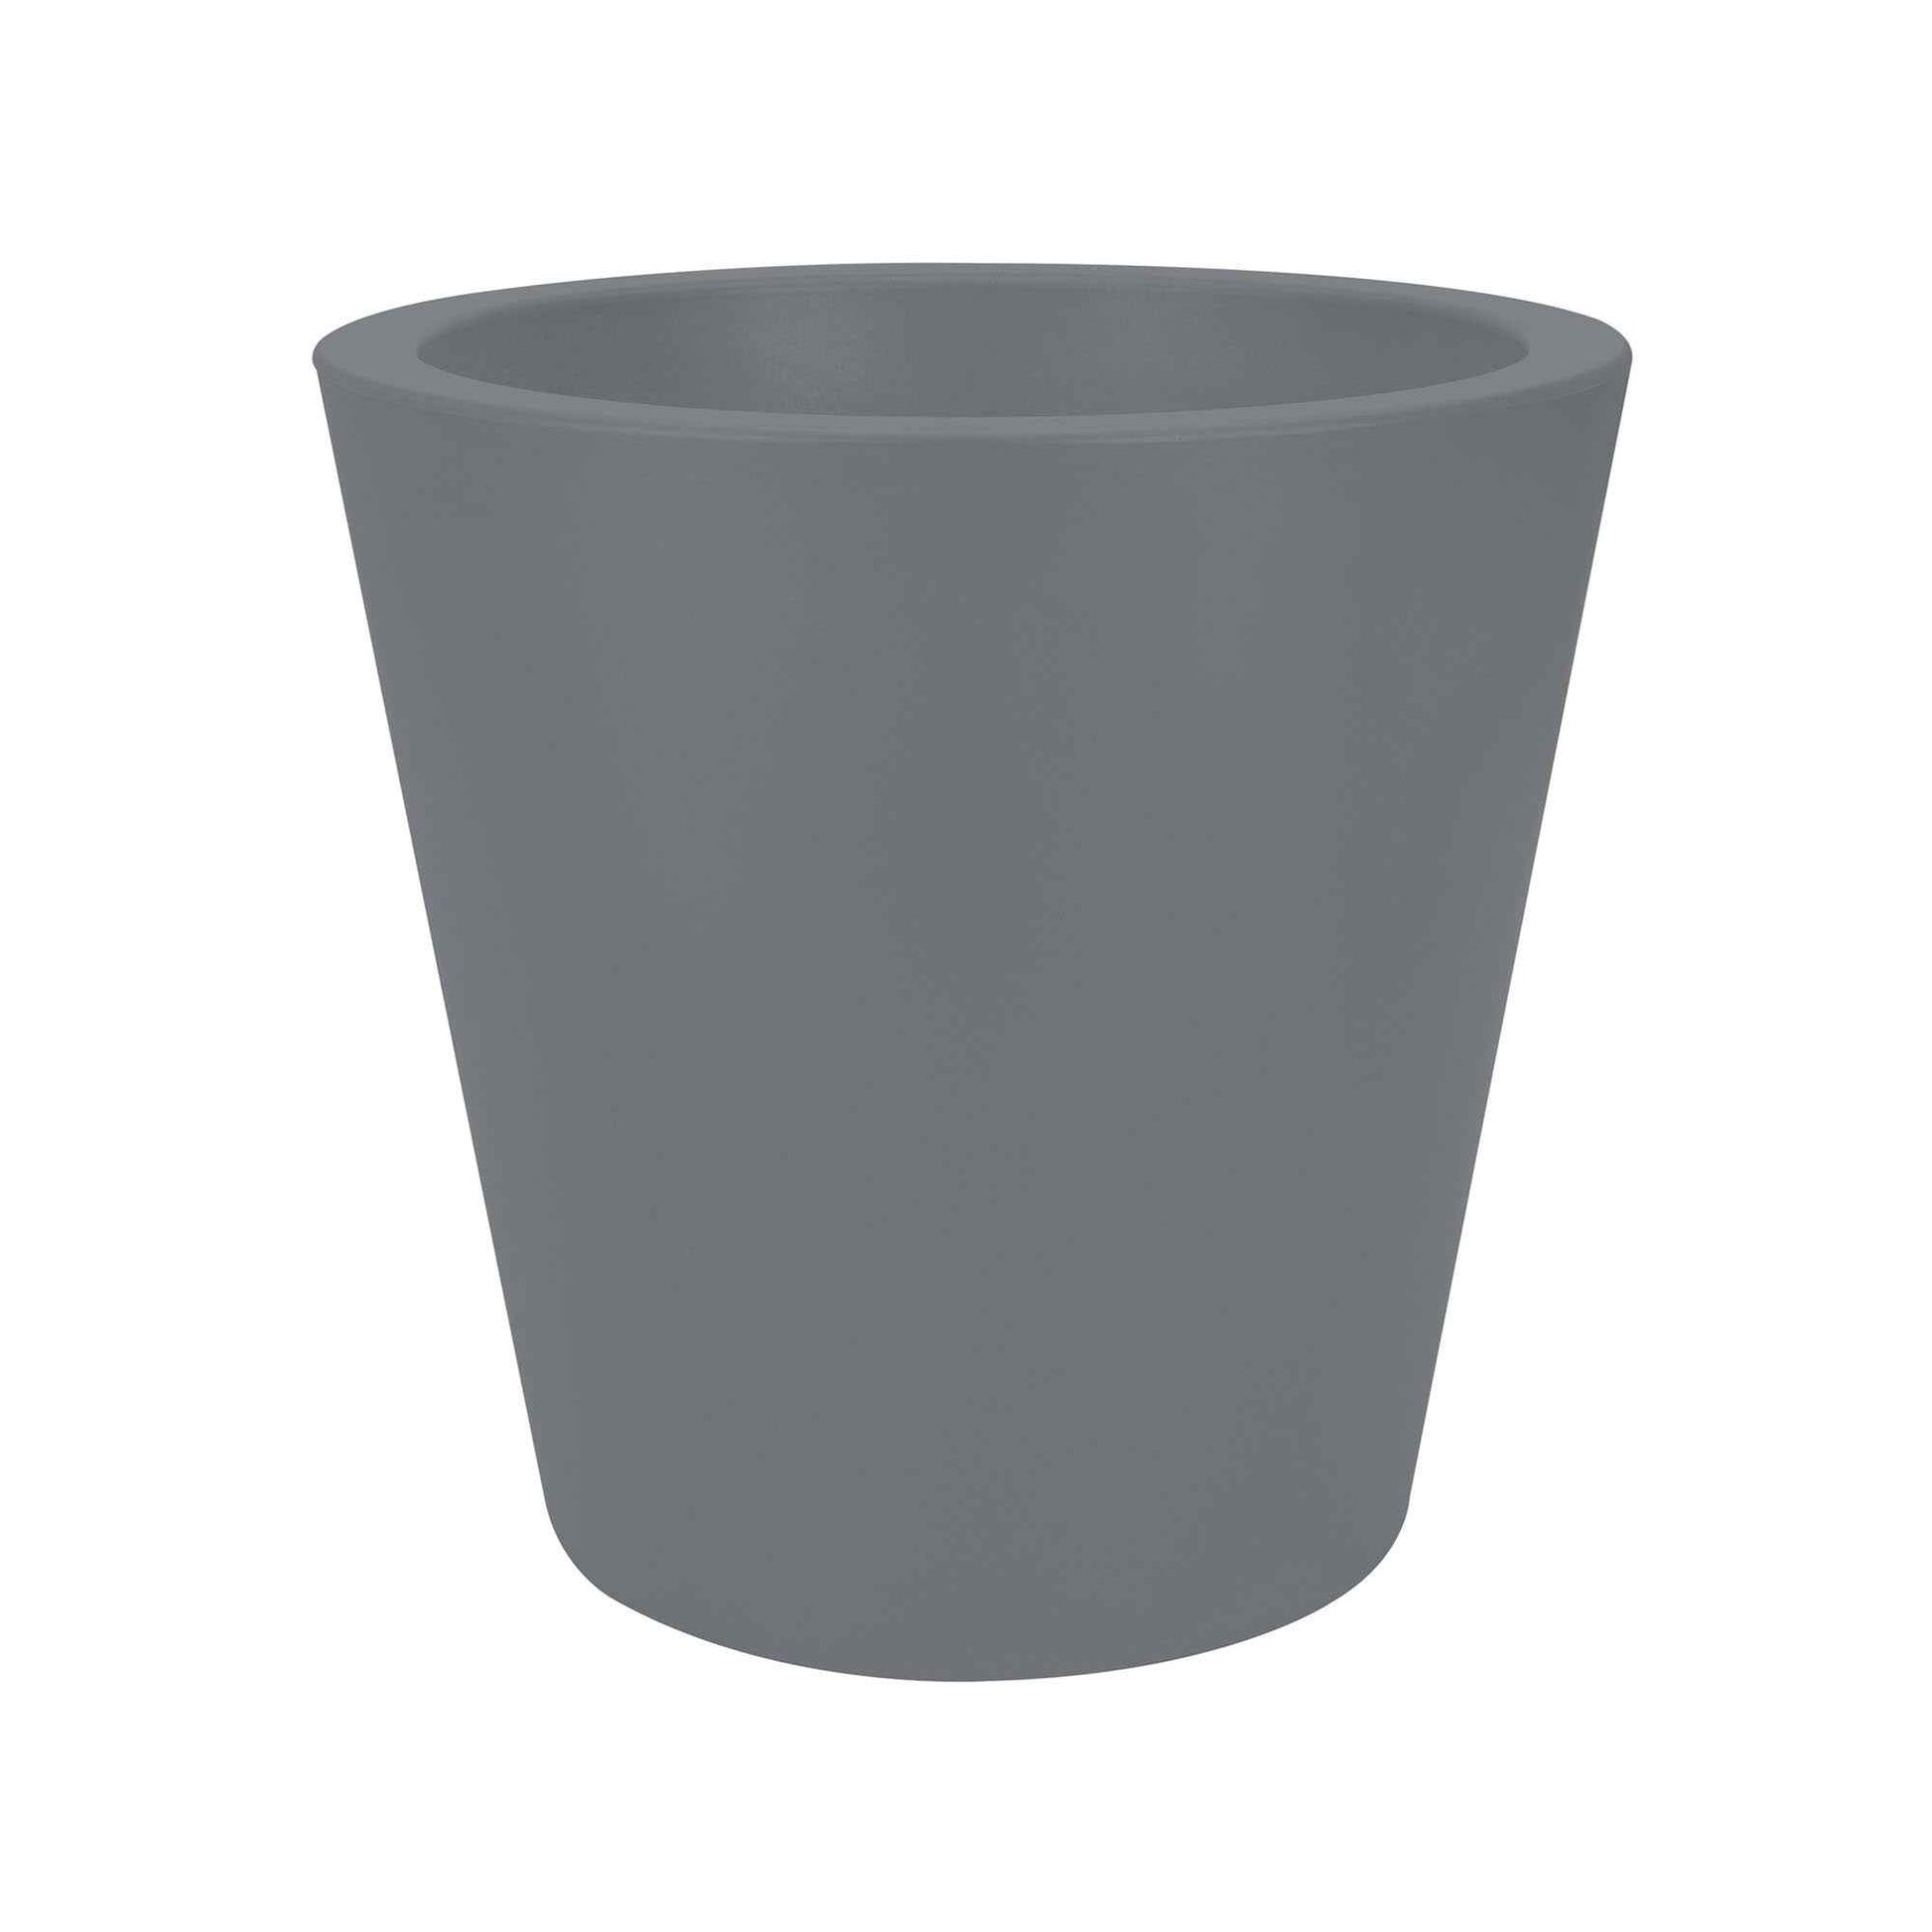 Elho pot de fleurs Pure straight rond gris béton - Pot pour l'intérieur et l'extérieur - Elho